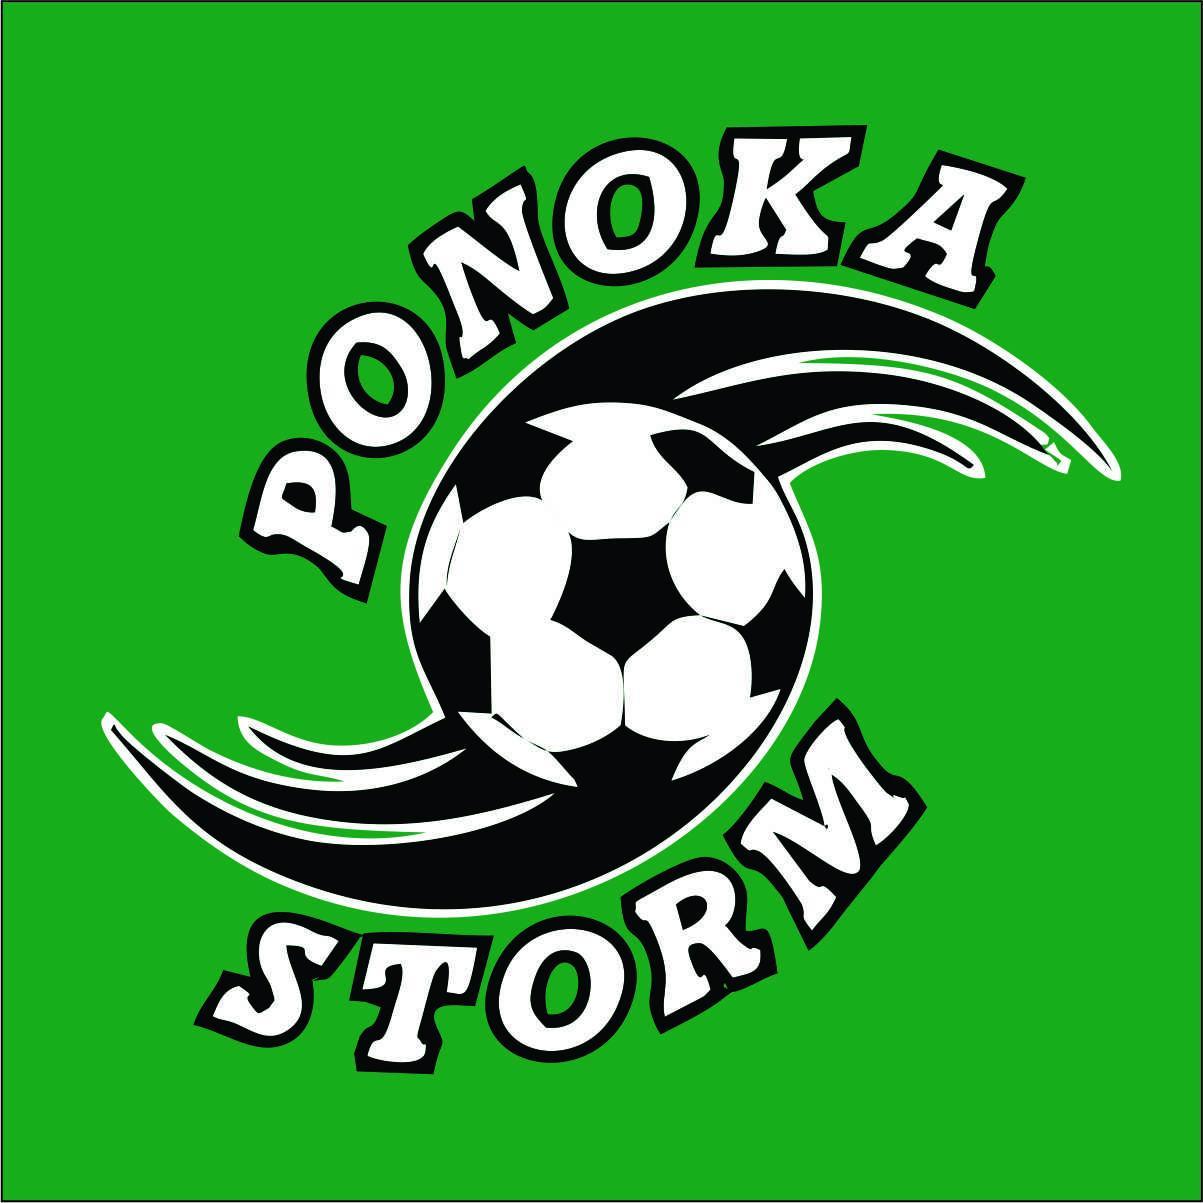 Ponoka Minor Soccer Association. Home of the Ponoka Storm.  Promoting soccer in the Town of Ponoka and Ponoka County.  A member of CASA.